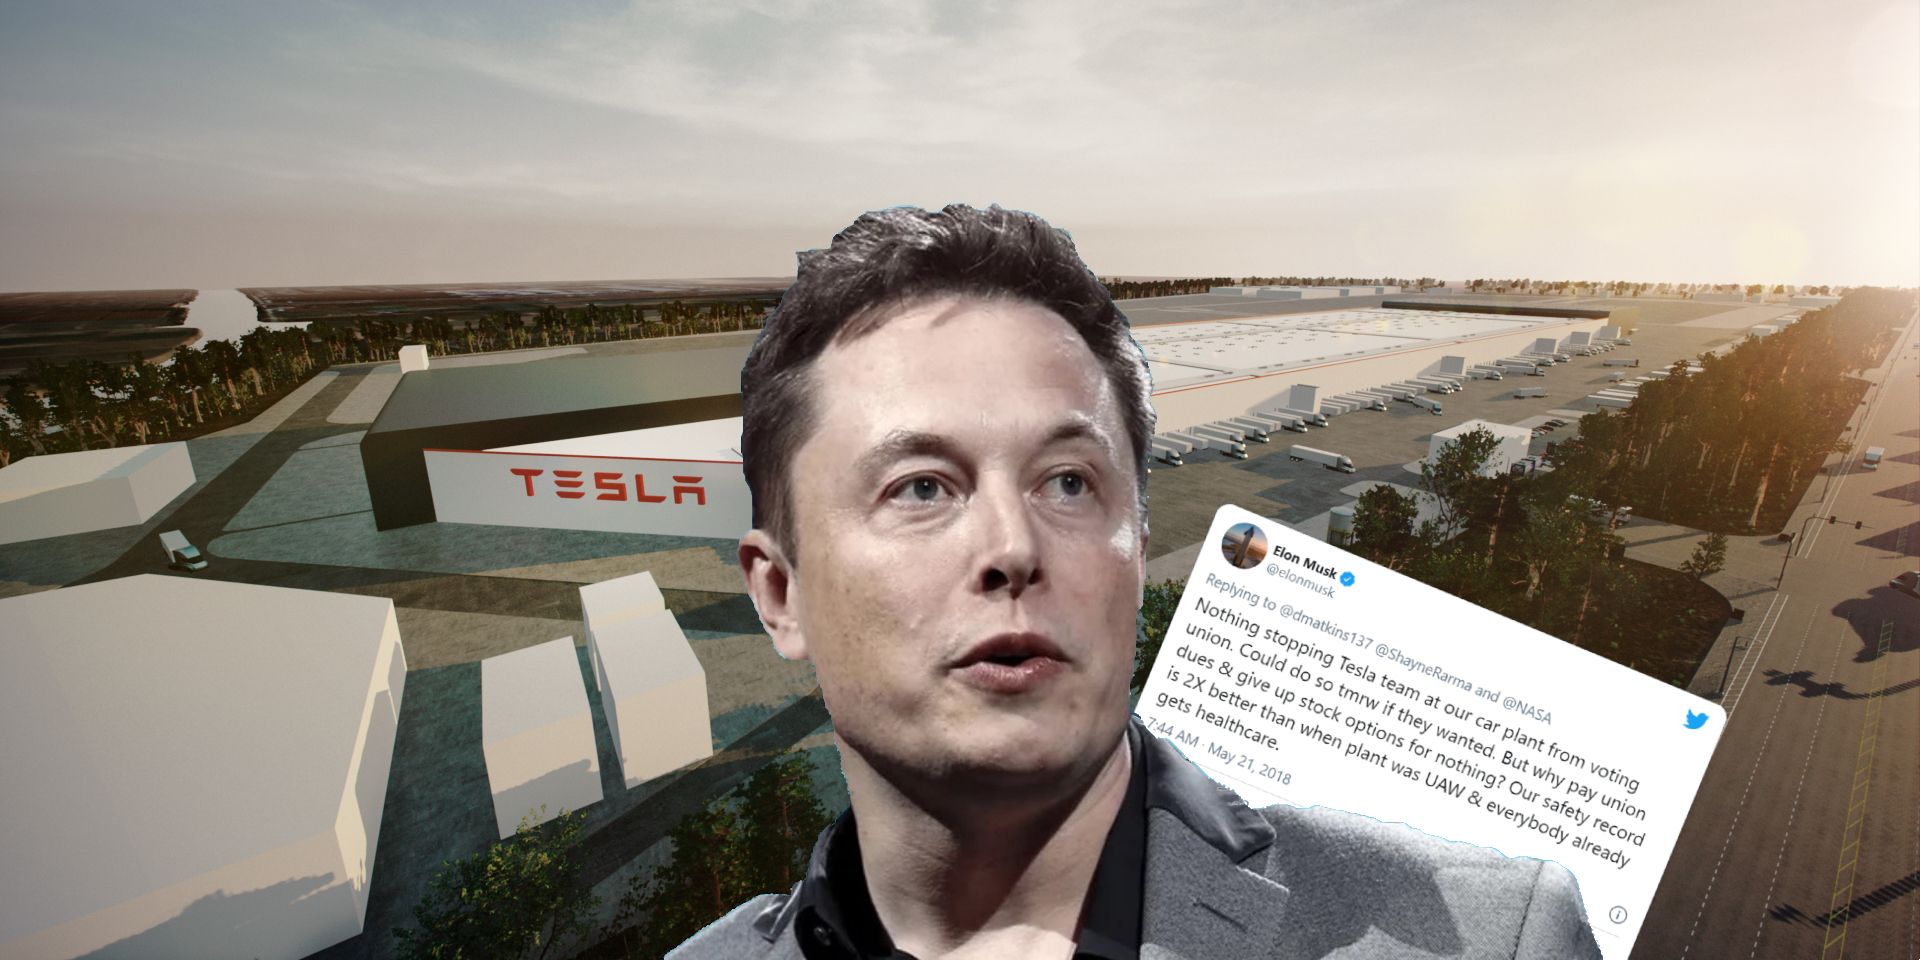 Elon Musk and tweet over Tesla factory background